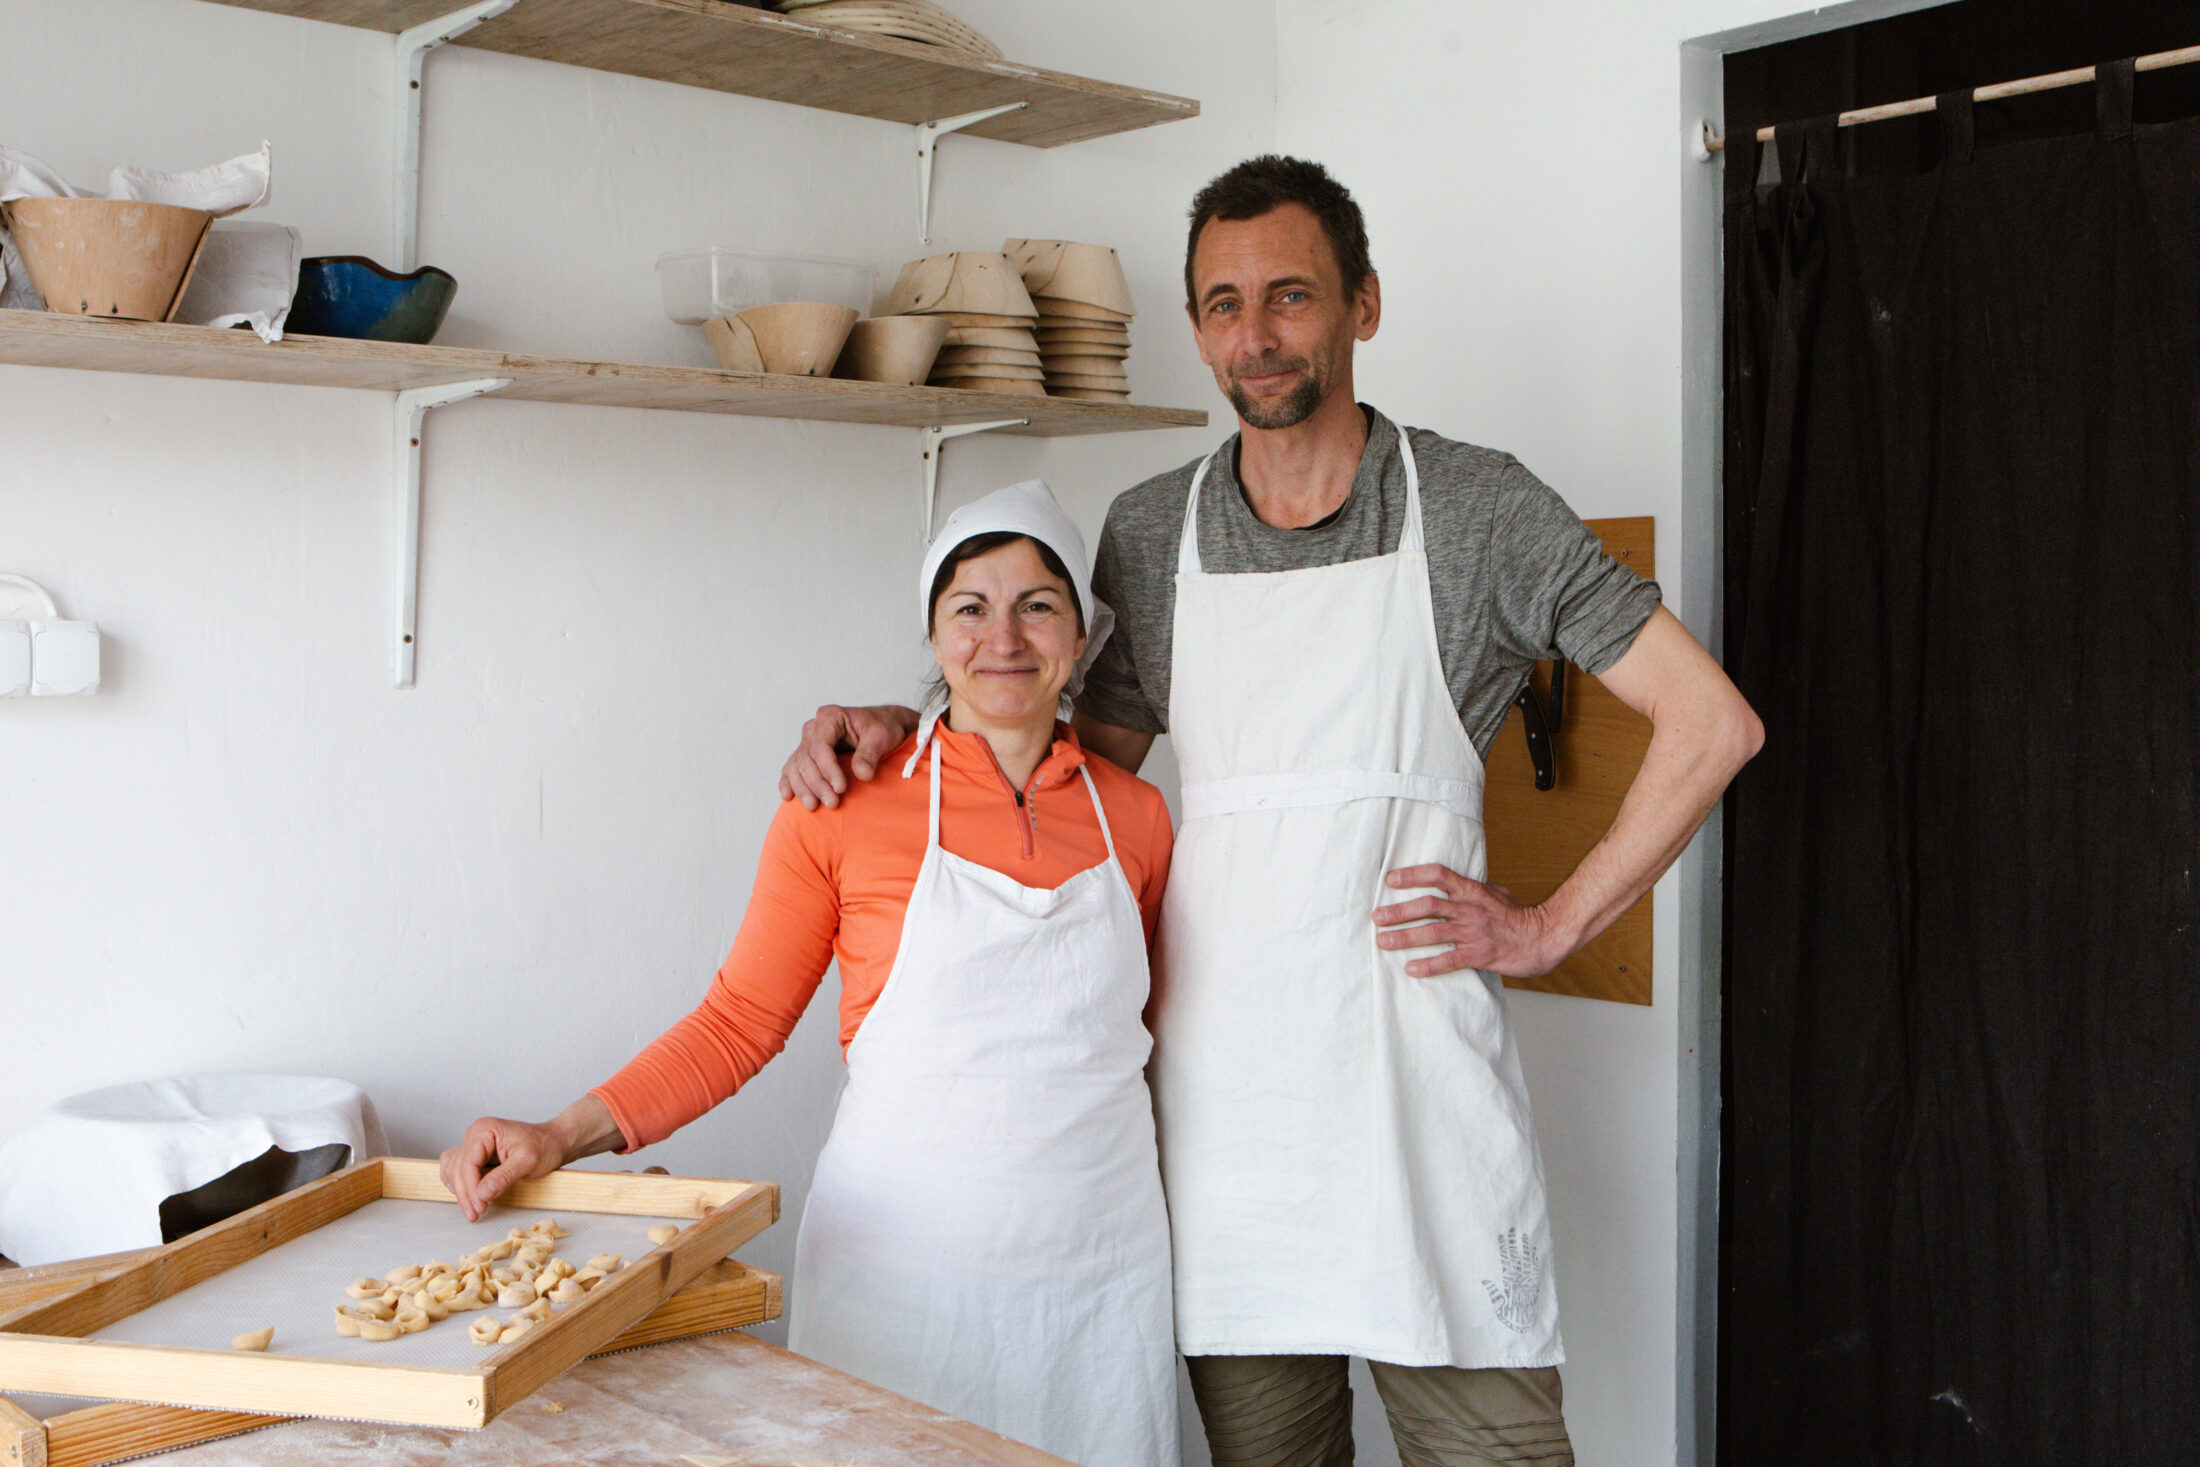 Házi olasz tészta és kovászos kenyér: a boldogsághoz szinte ennyi elég!